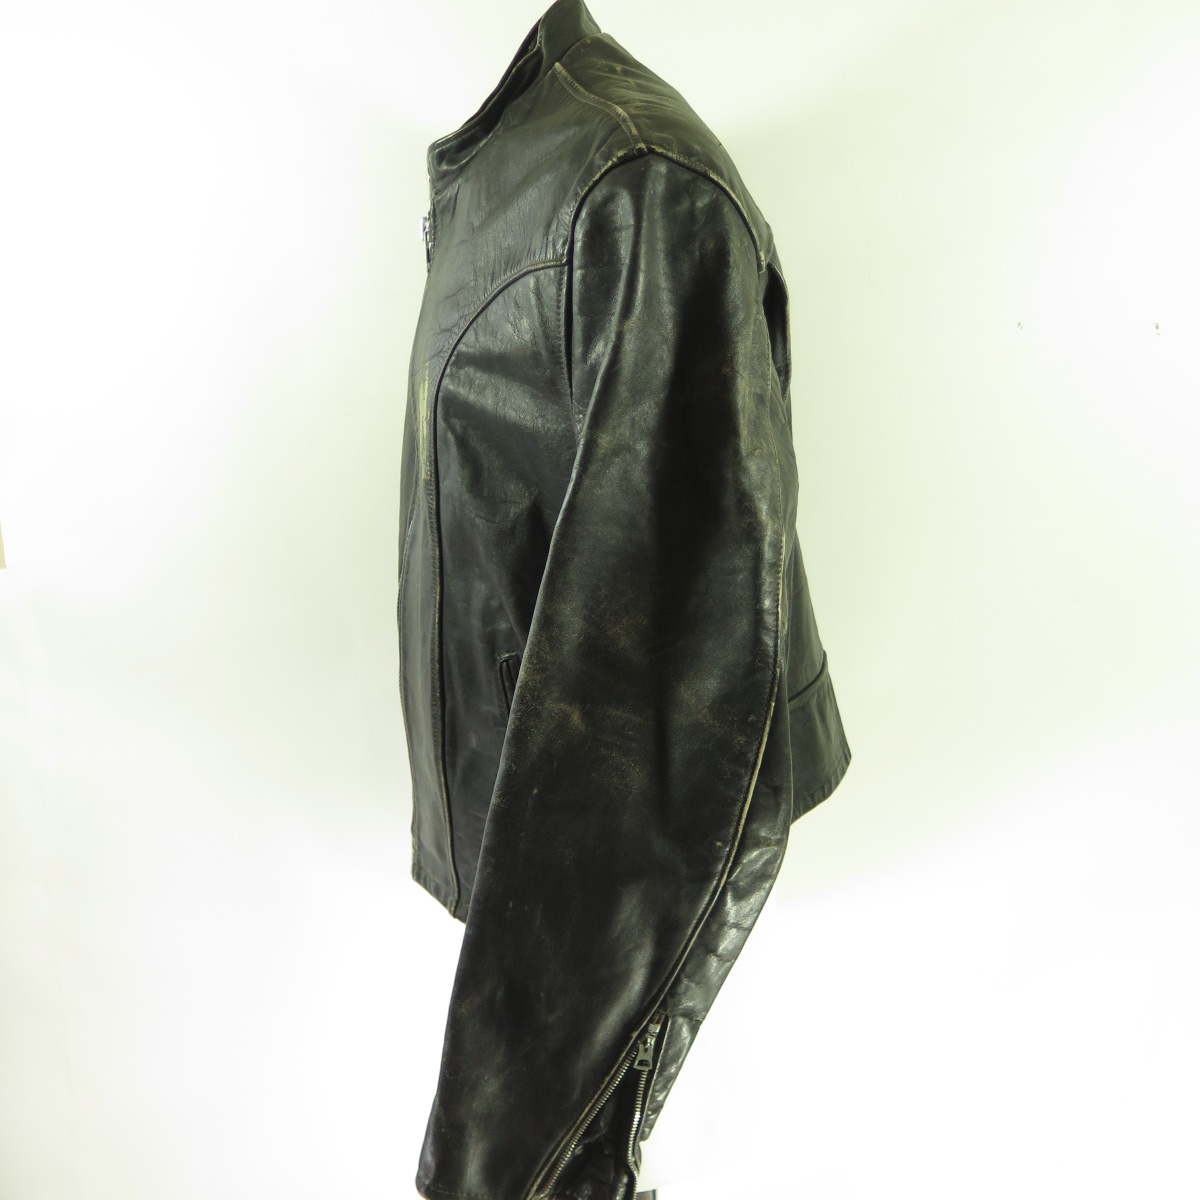 CENTURY 90 COCOA LEATHER JACKET - Men's Leather jacket